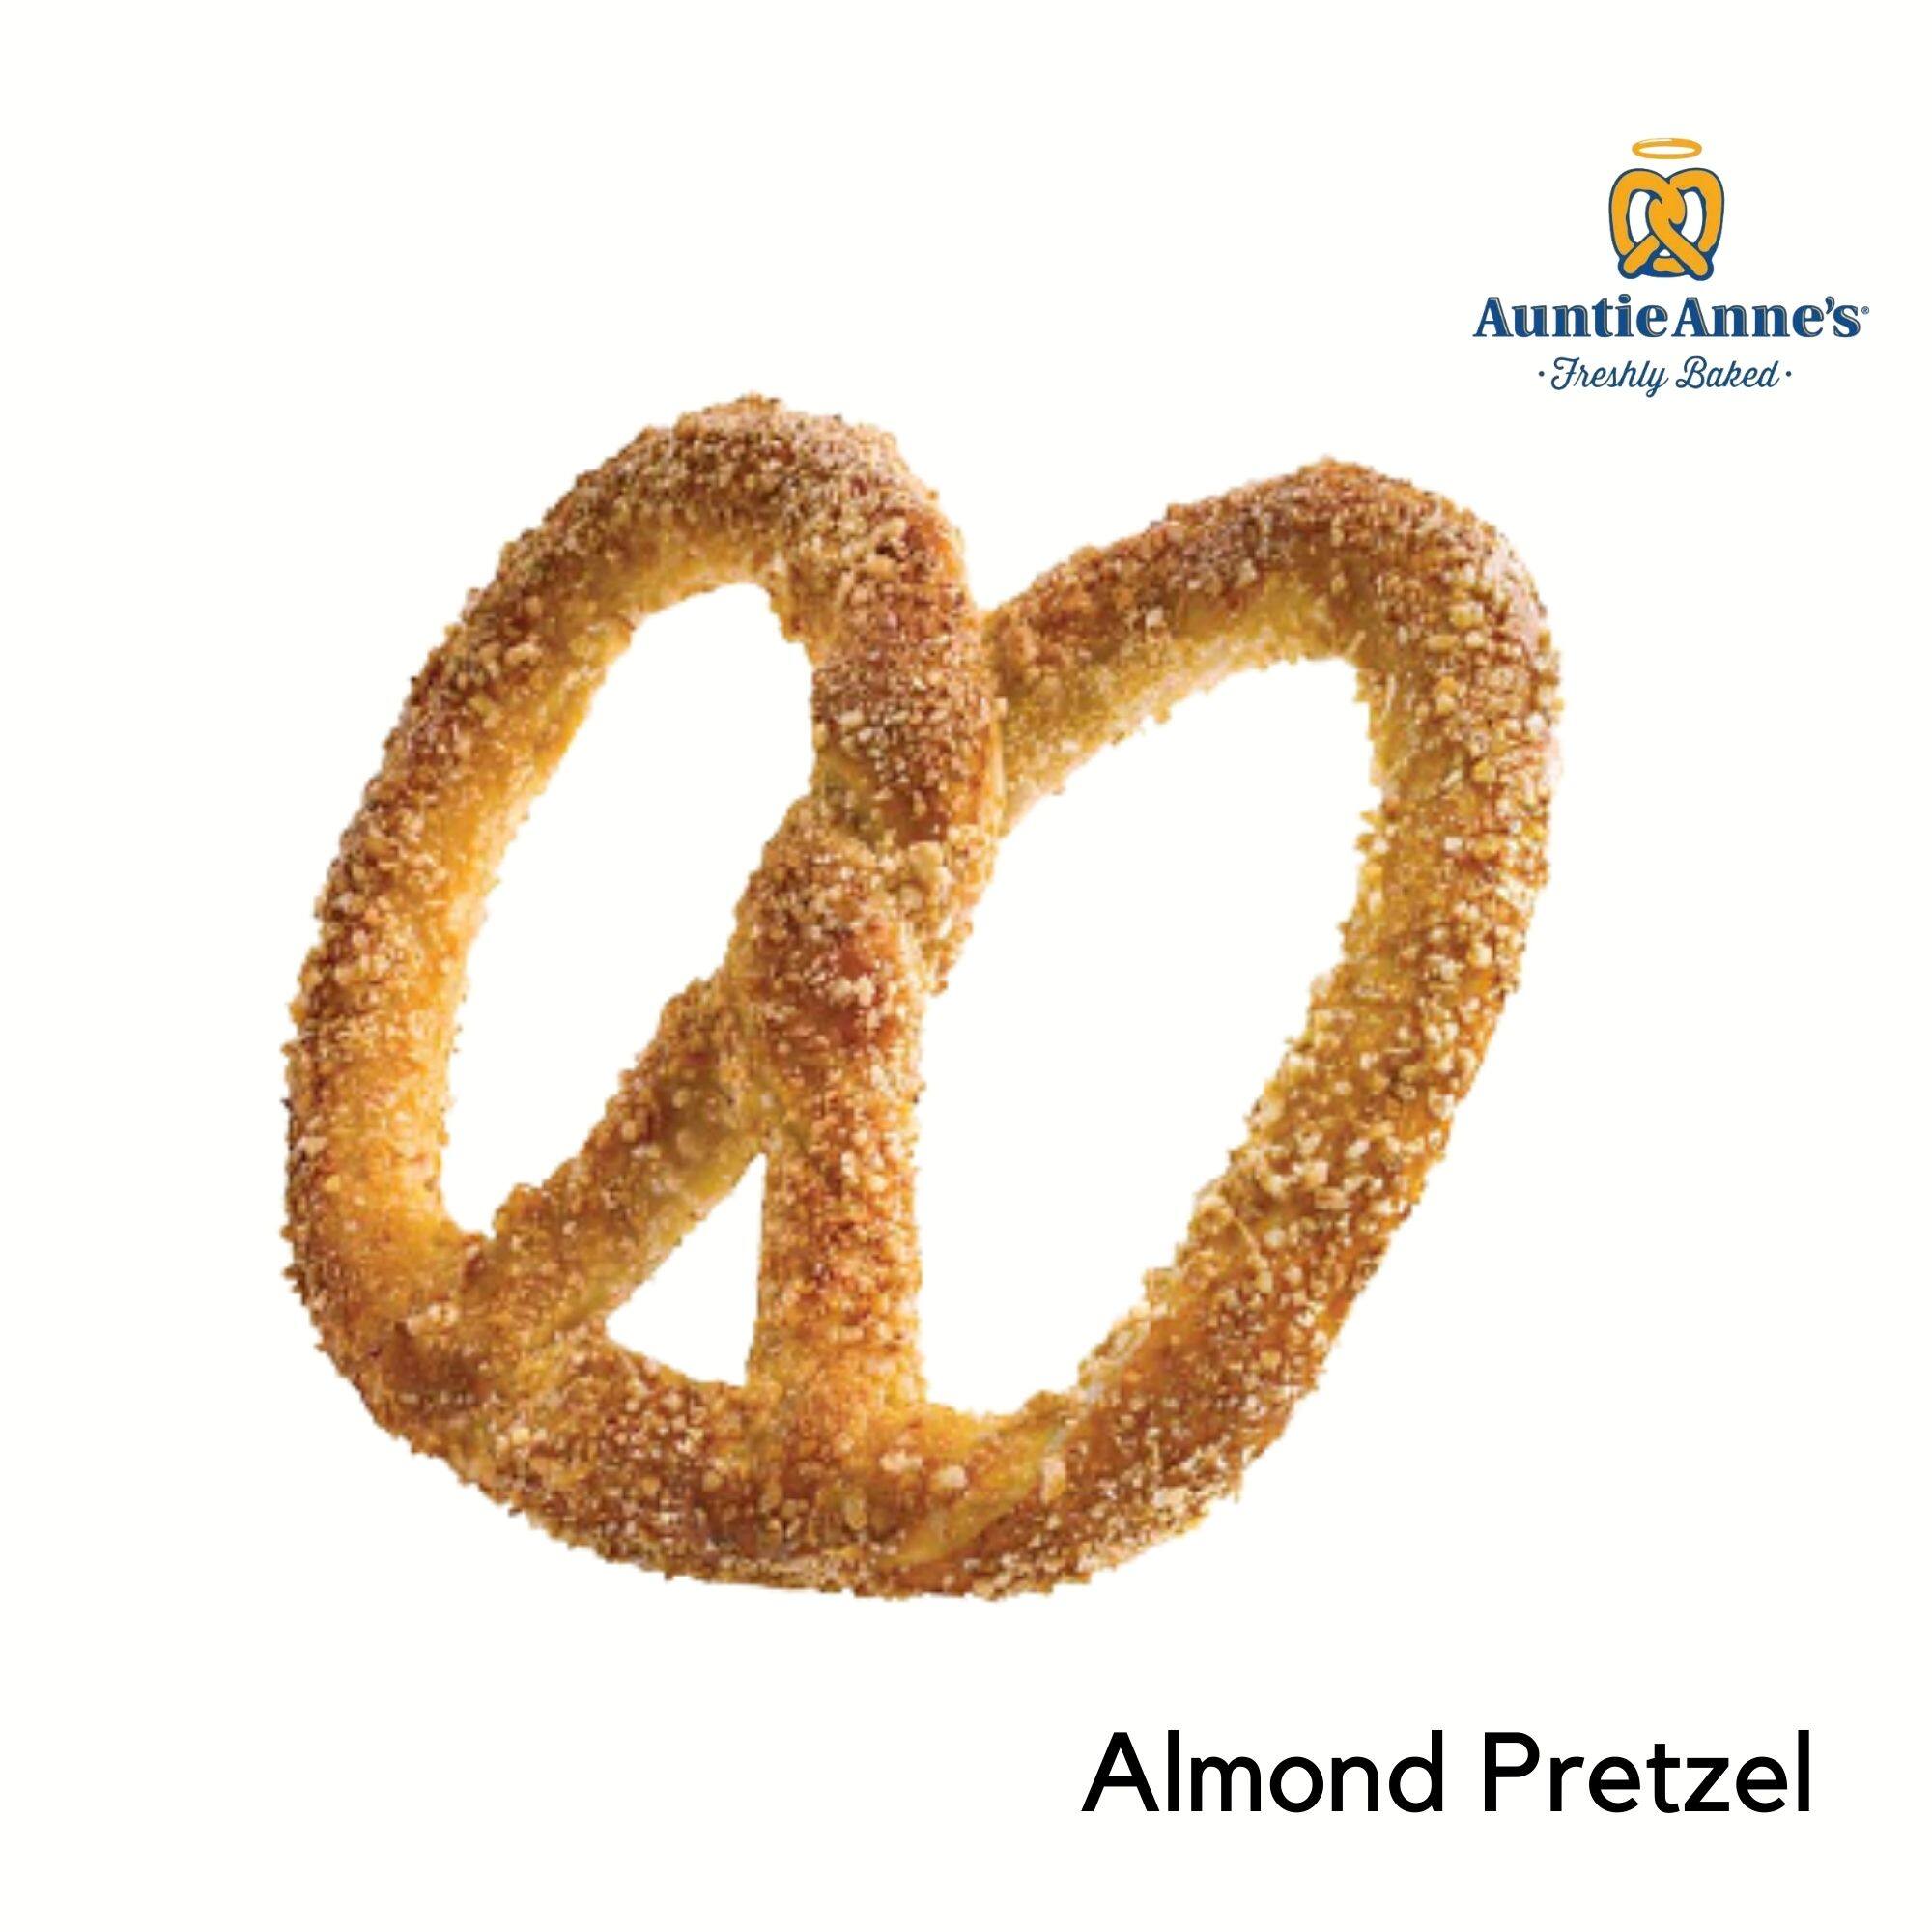 [E-Voucher] Auntie Anne's Almond Pretzel - อานตี้ แอนส์ อัลมอนด์ เพรทเซล